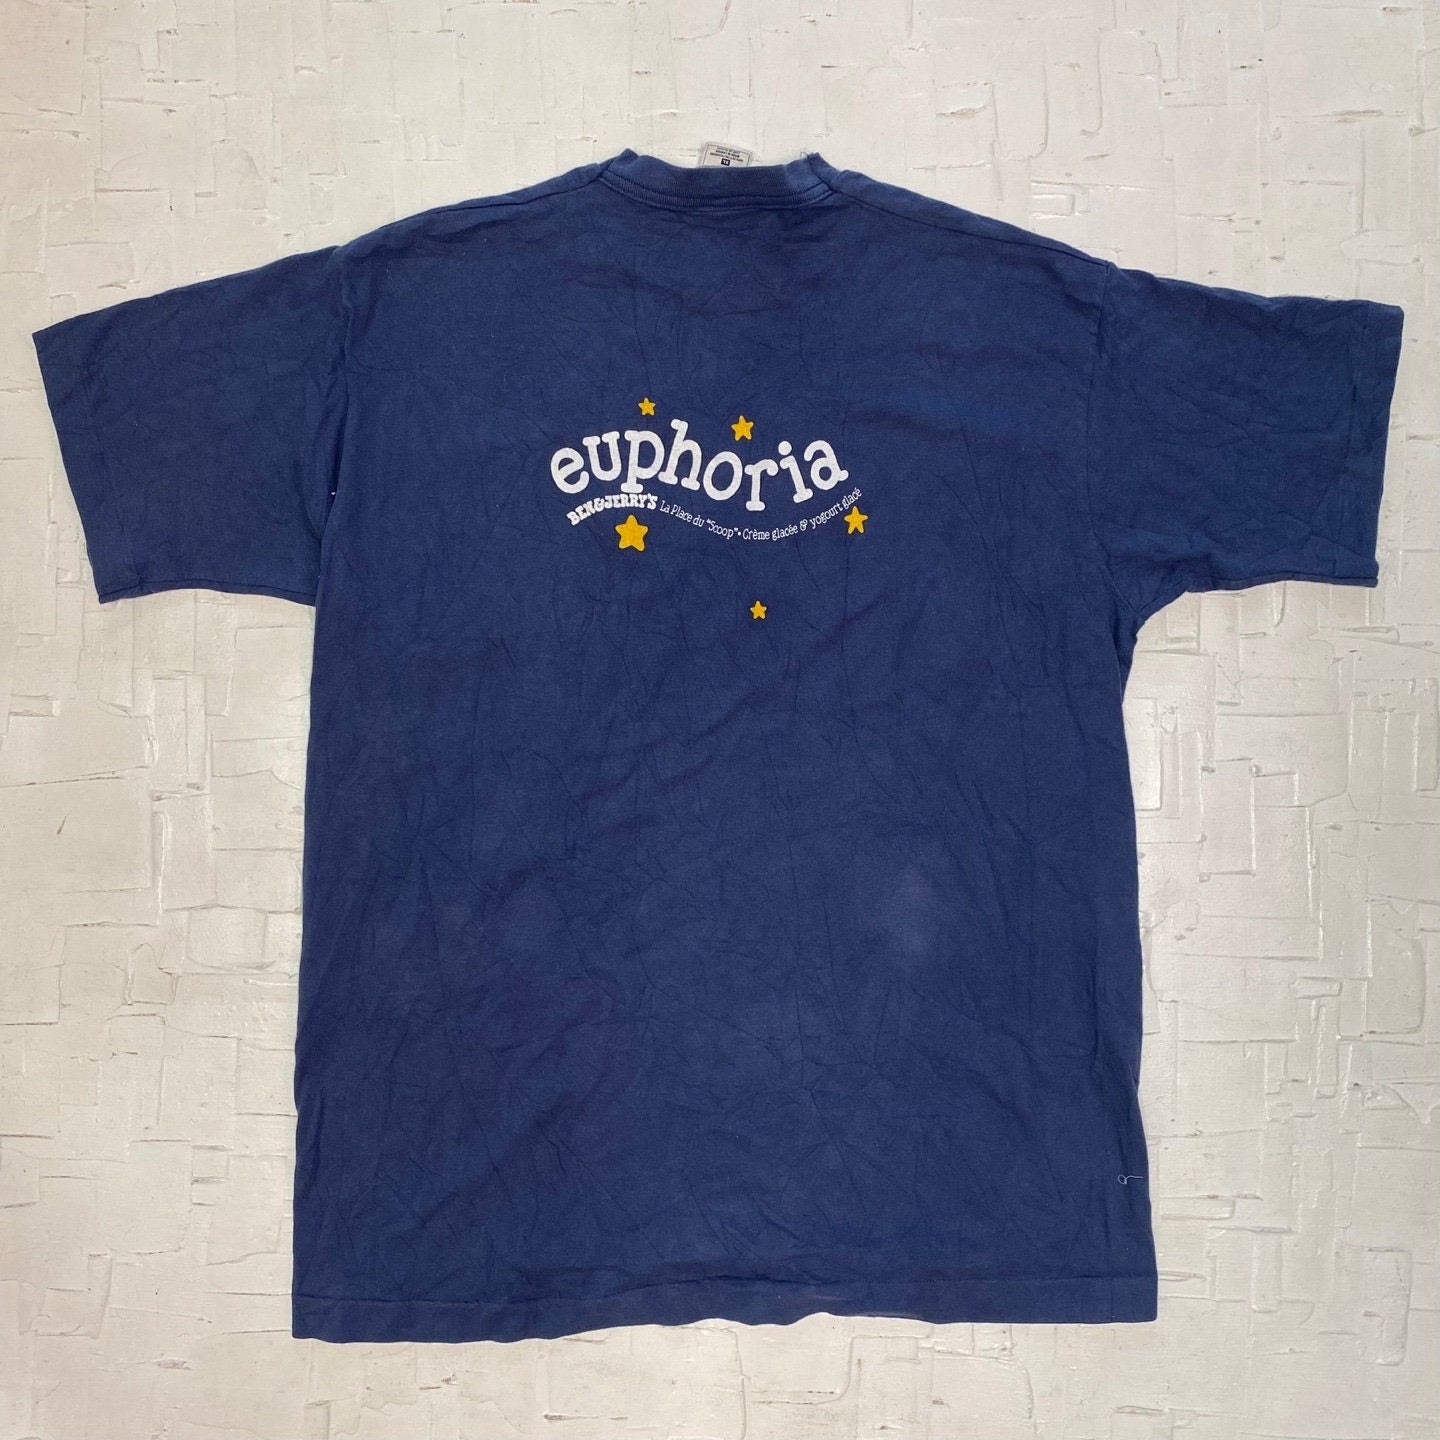 Vintage Ben and Jerry's Euphoria Navy Blue T-shirt | Vintage T-shirt | La Place du Scoop | Three Cows | Ice Cream Shirt | Men's XL | M-2048